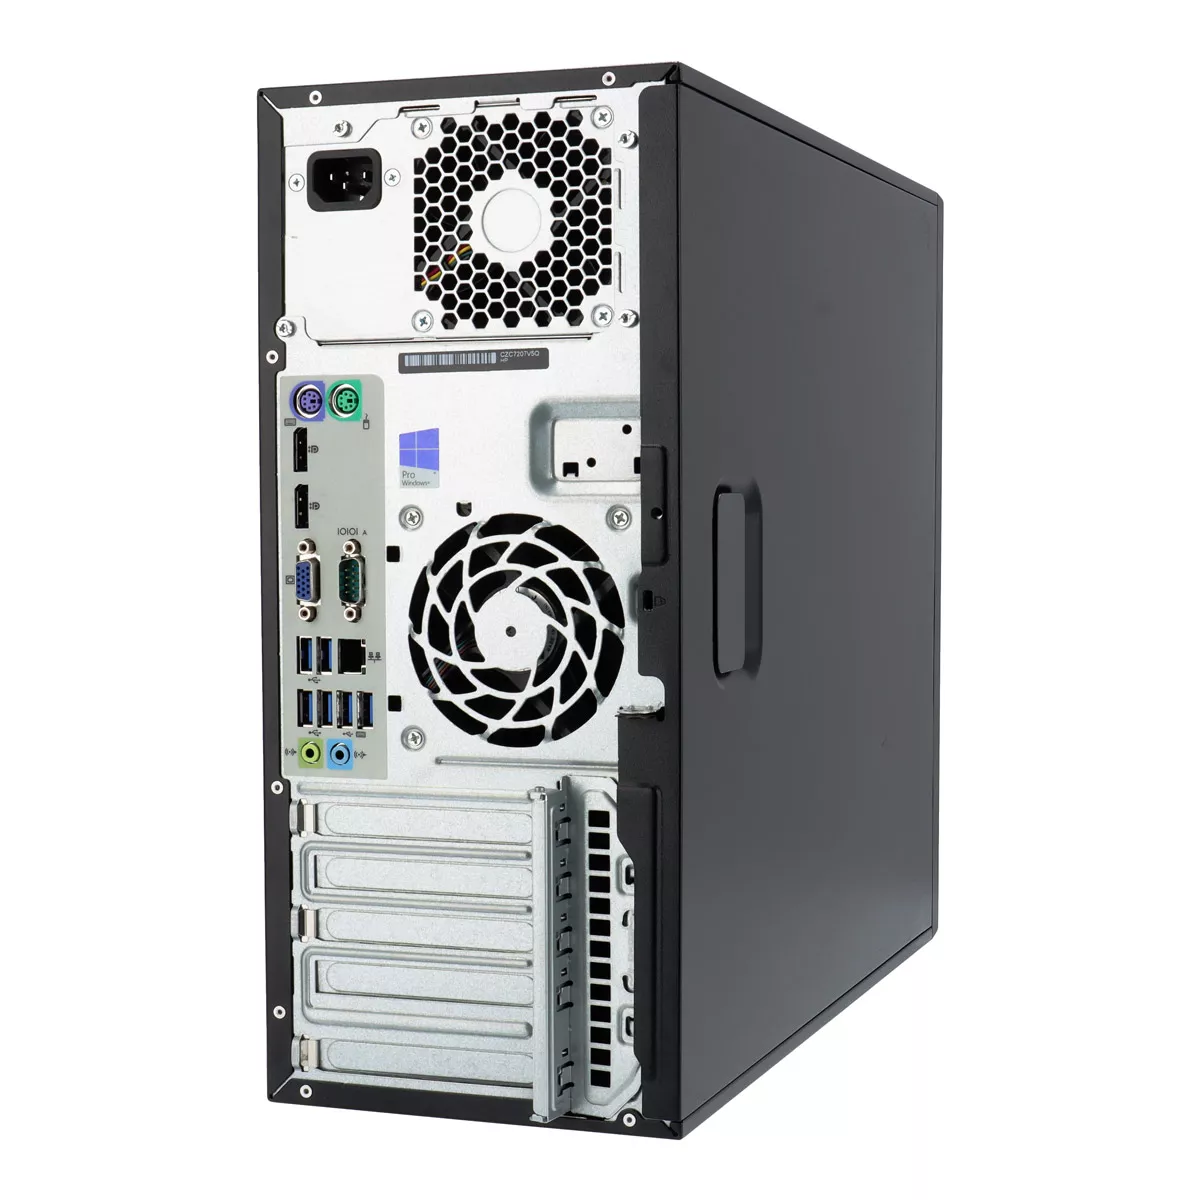 HP EliteDesk 800 G2 Tower Core i5 6500 3,2 GHz